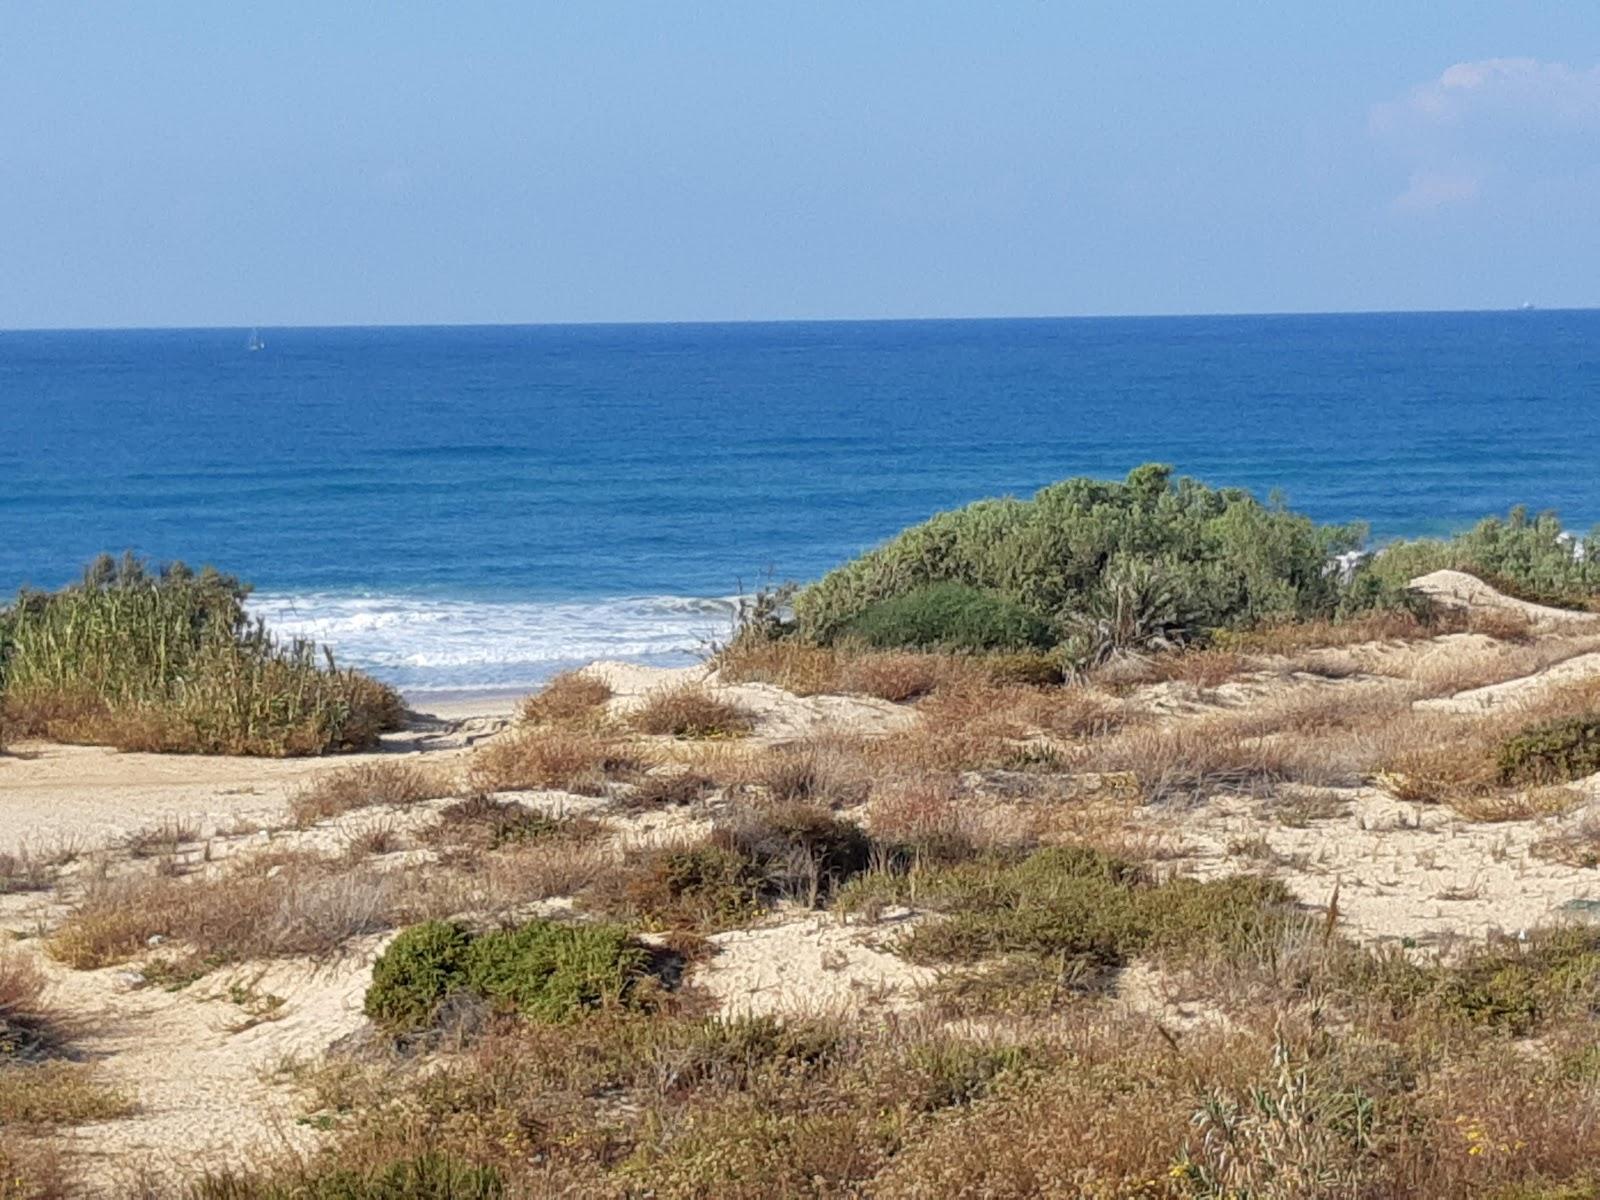 Sandee - Hofit Beach In Ashkelon